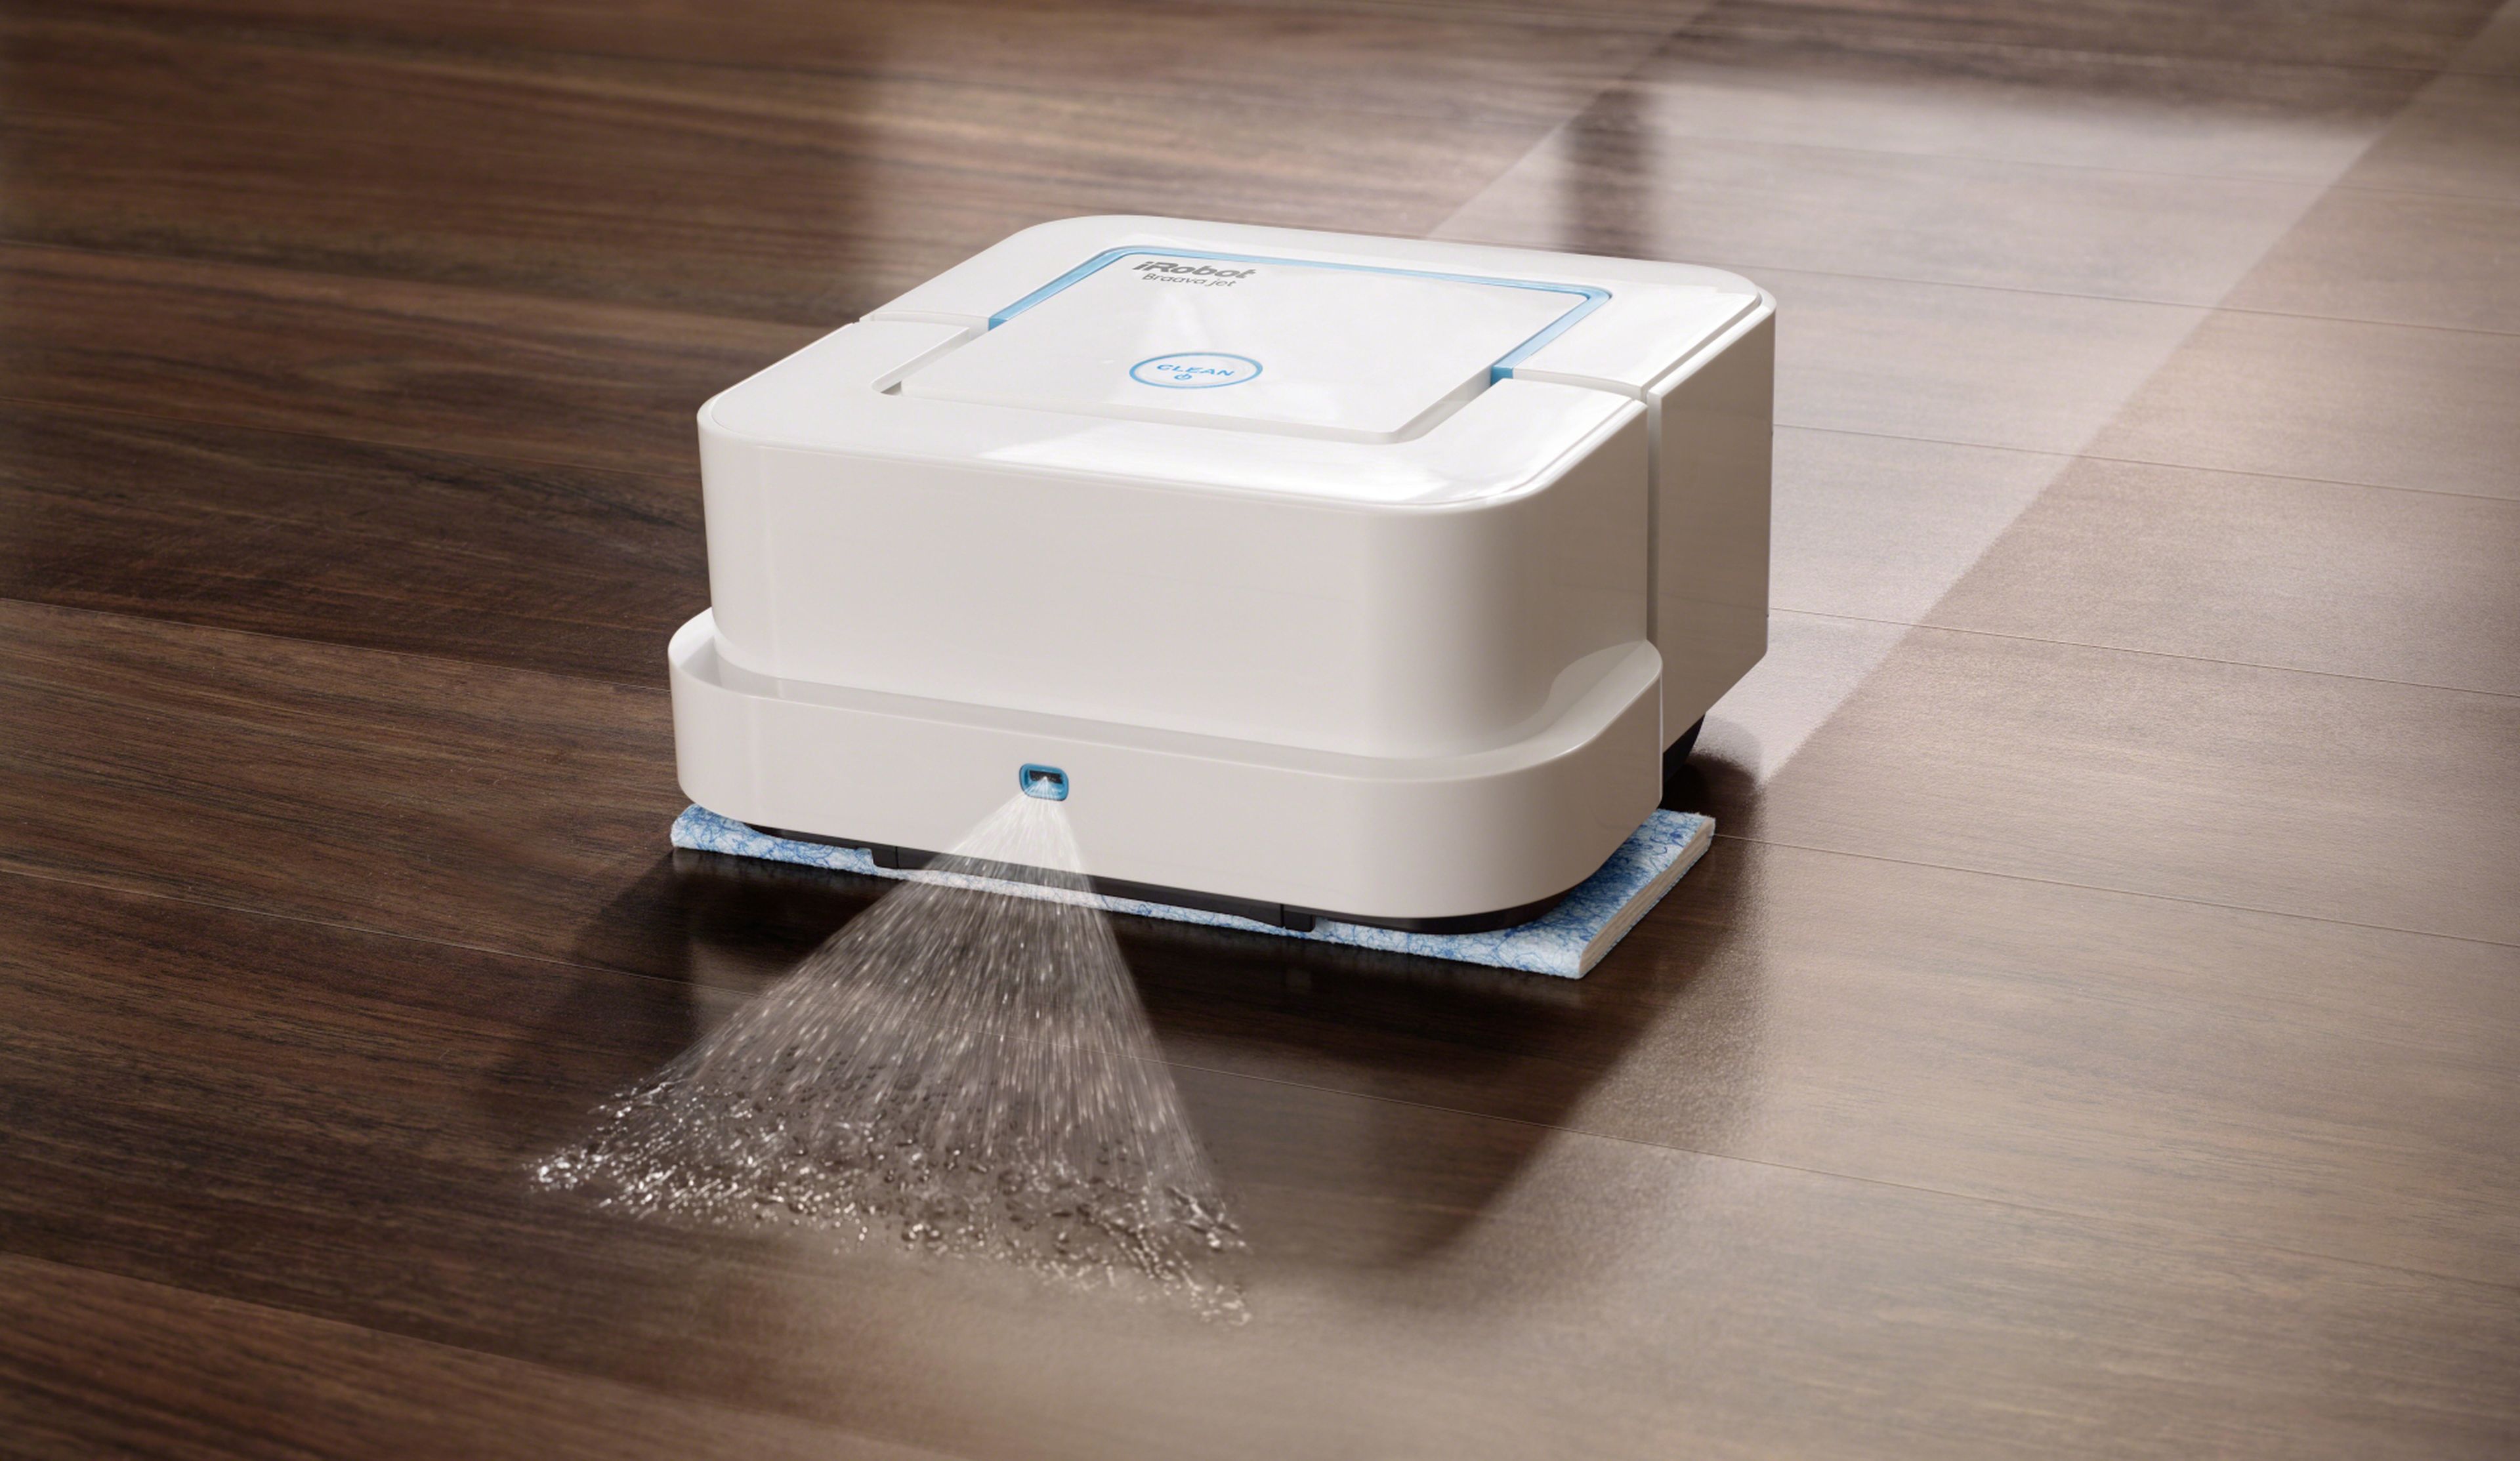 2x1 en robots de limpieza: si compras esta Roomba, te llevas un robot  friegasuelos de 200€ de regalo